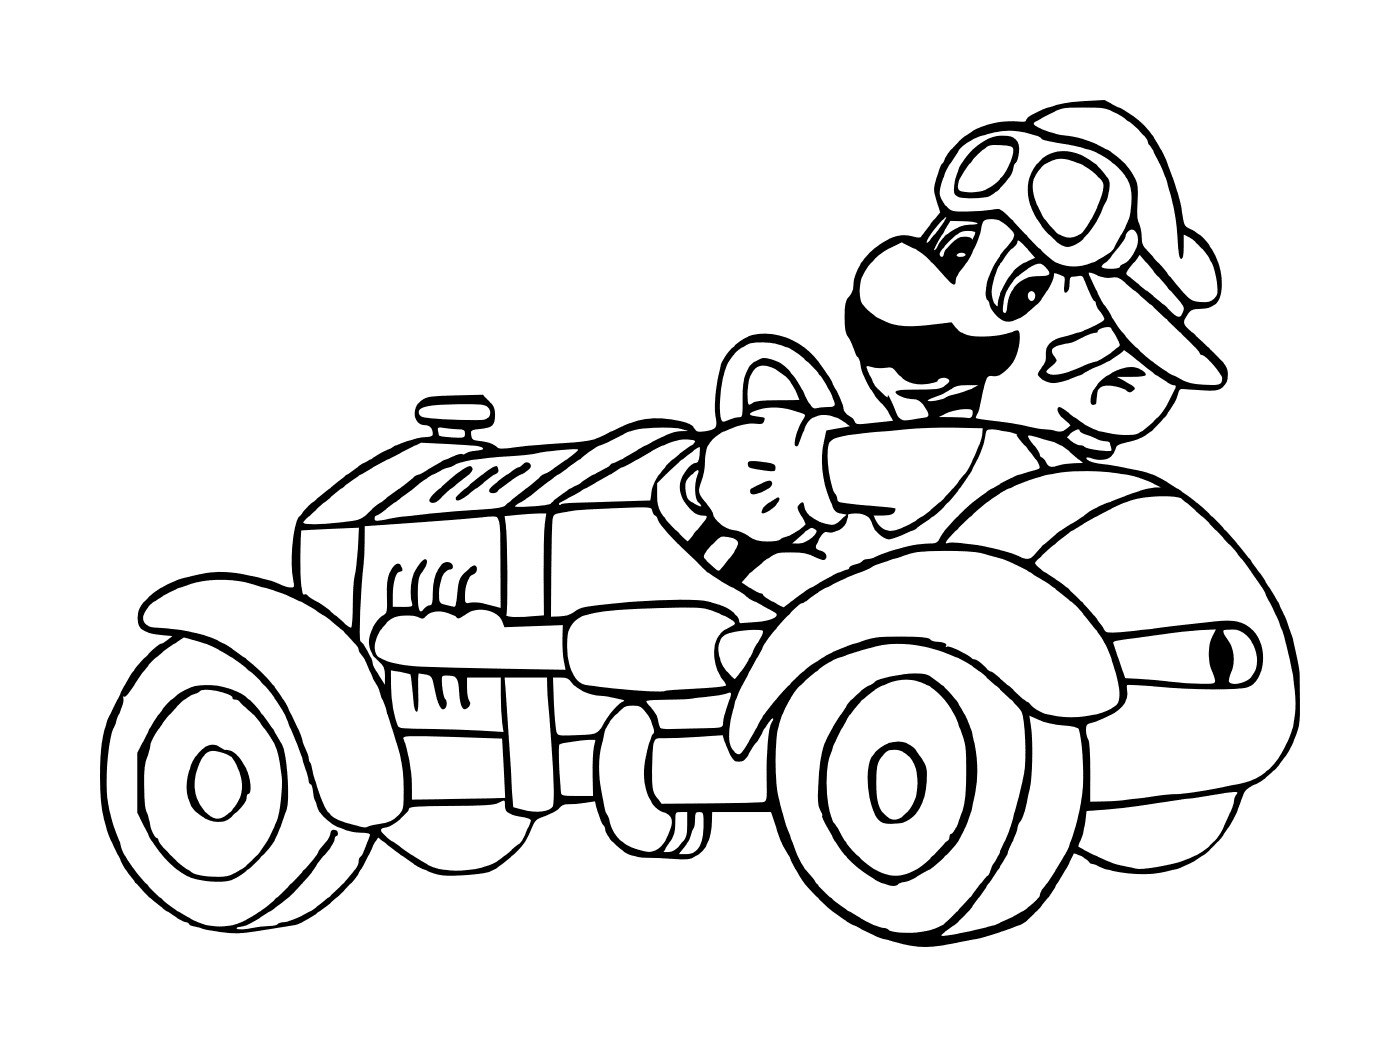  Mario Kart, ein altes Auto 